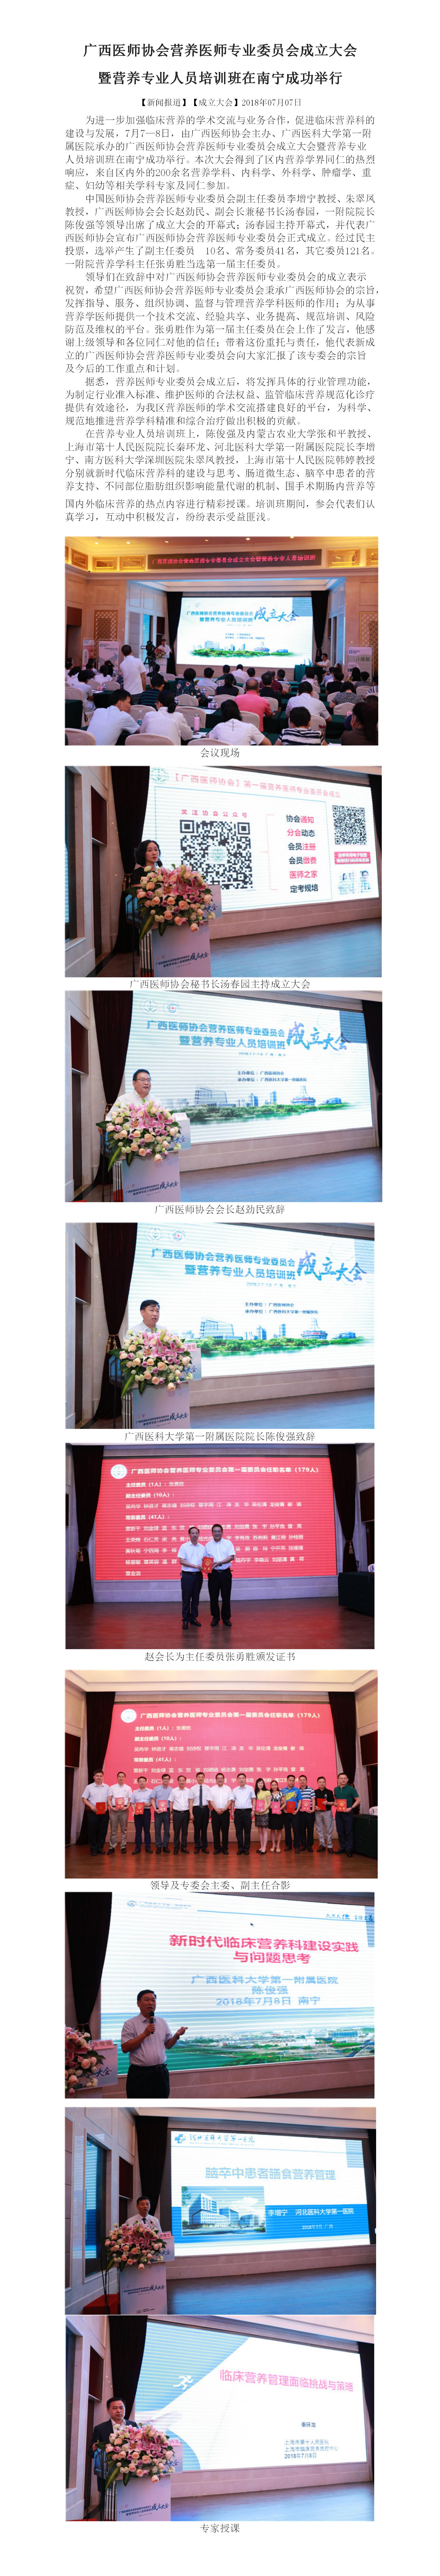 广西医师协会营养医师专业委员会成立大会（2018.07.07）.jpg